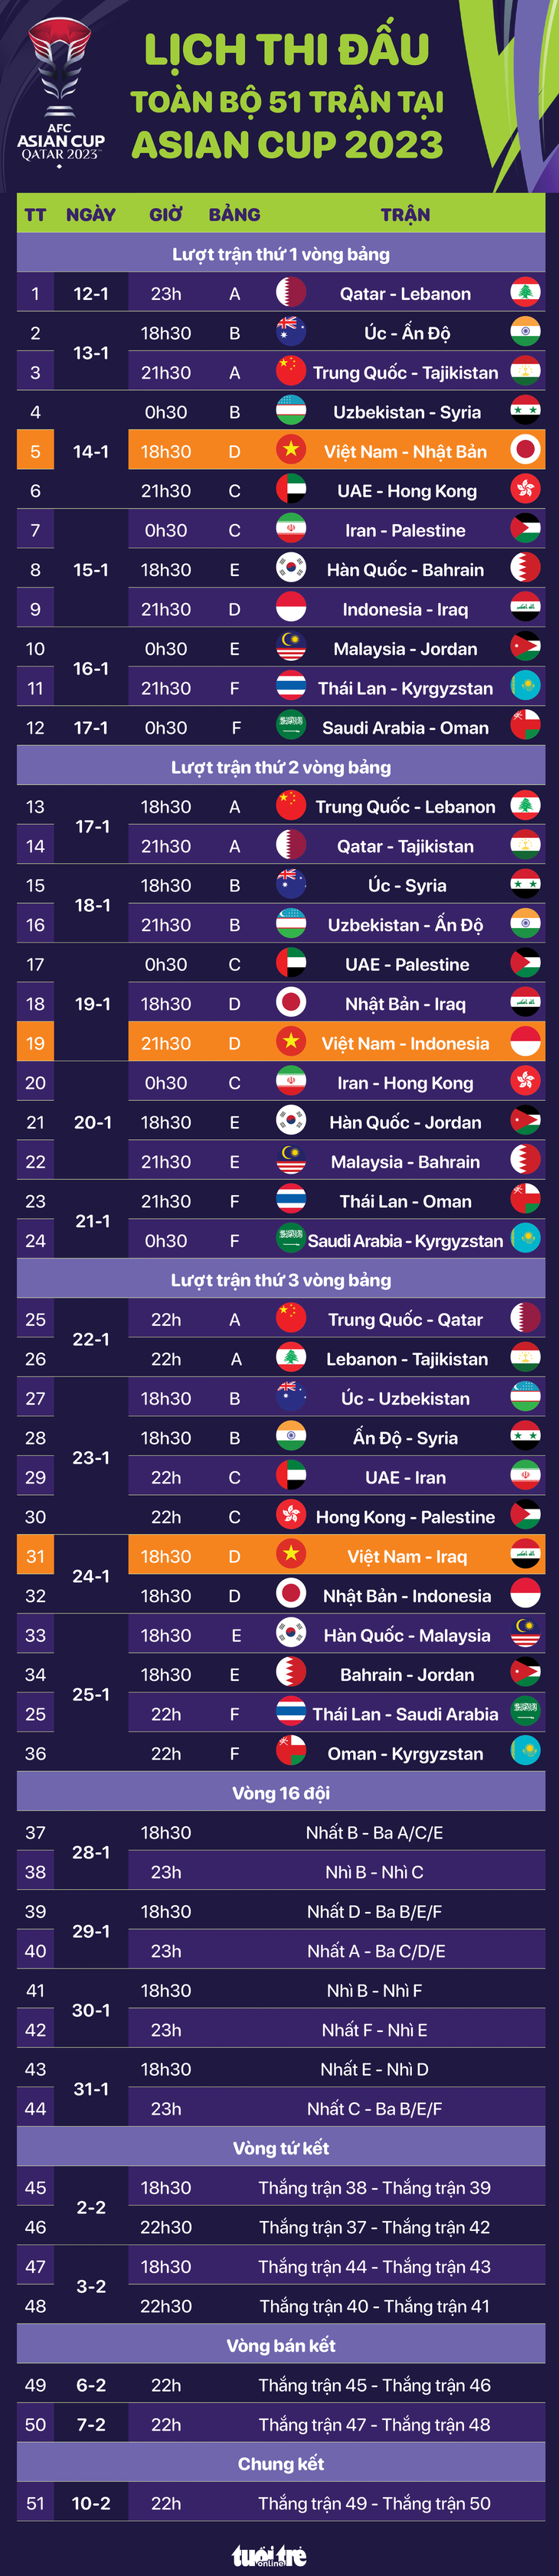 Lịch thi đấu toàn bộ 51 trận tại Asian Cup 2023 - Đồ họa: AN BÌNH